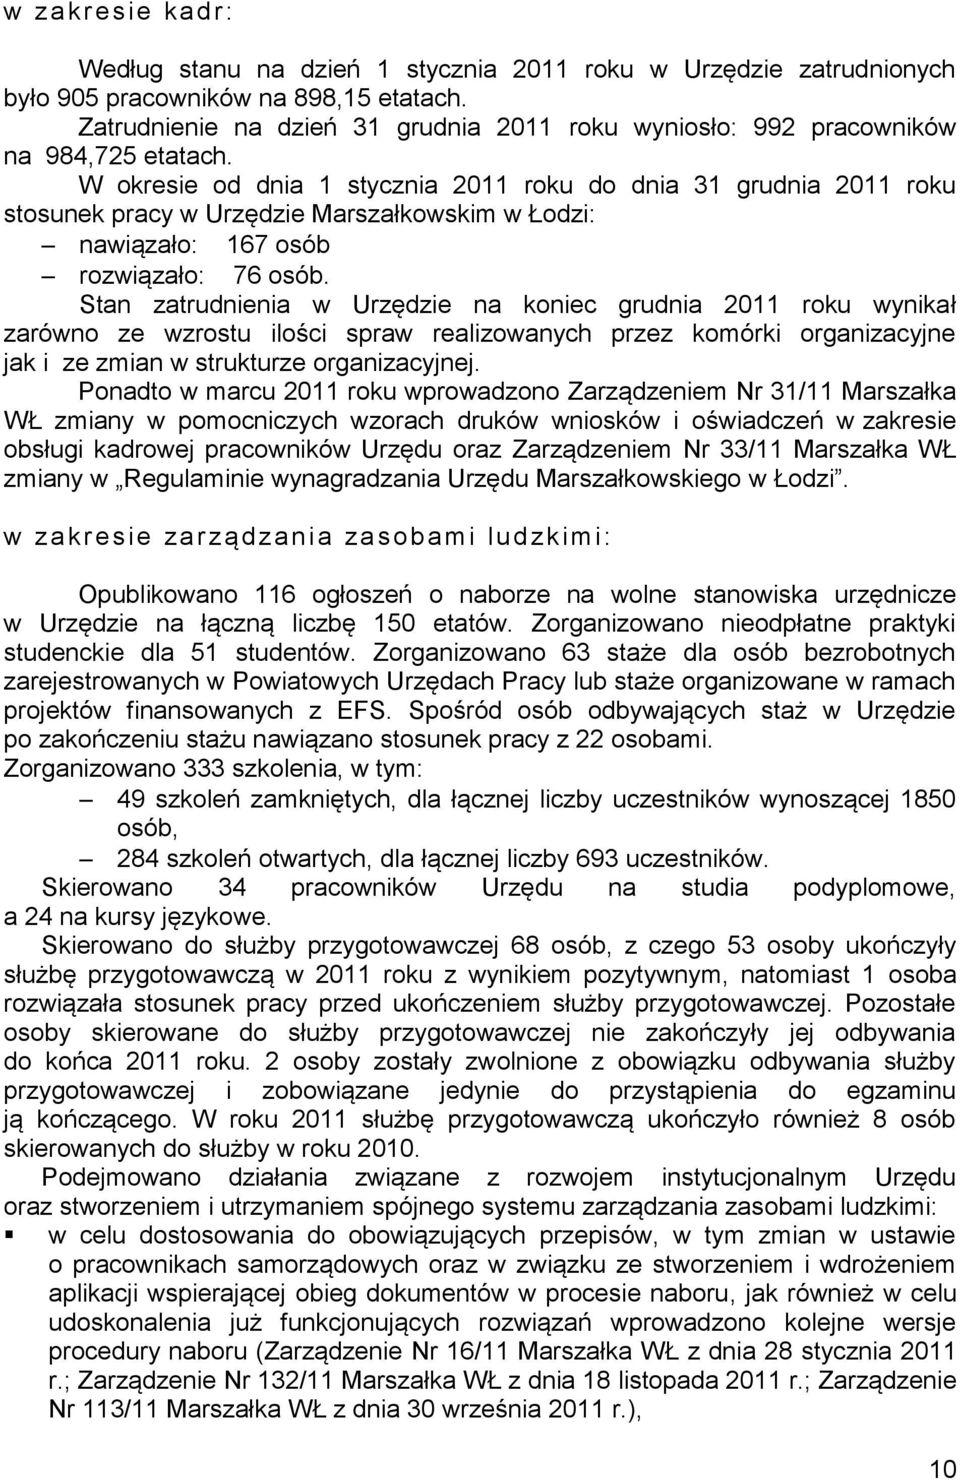 W okresie od dnia 1 stycznia 2011 roku do dnia 31 grudnia 2011 roku stosunek pracy w Urzędzie Marszałkowskim w Łodzi: nawiązało: 167 osób rozwiązało: 76 osób.